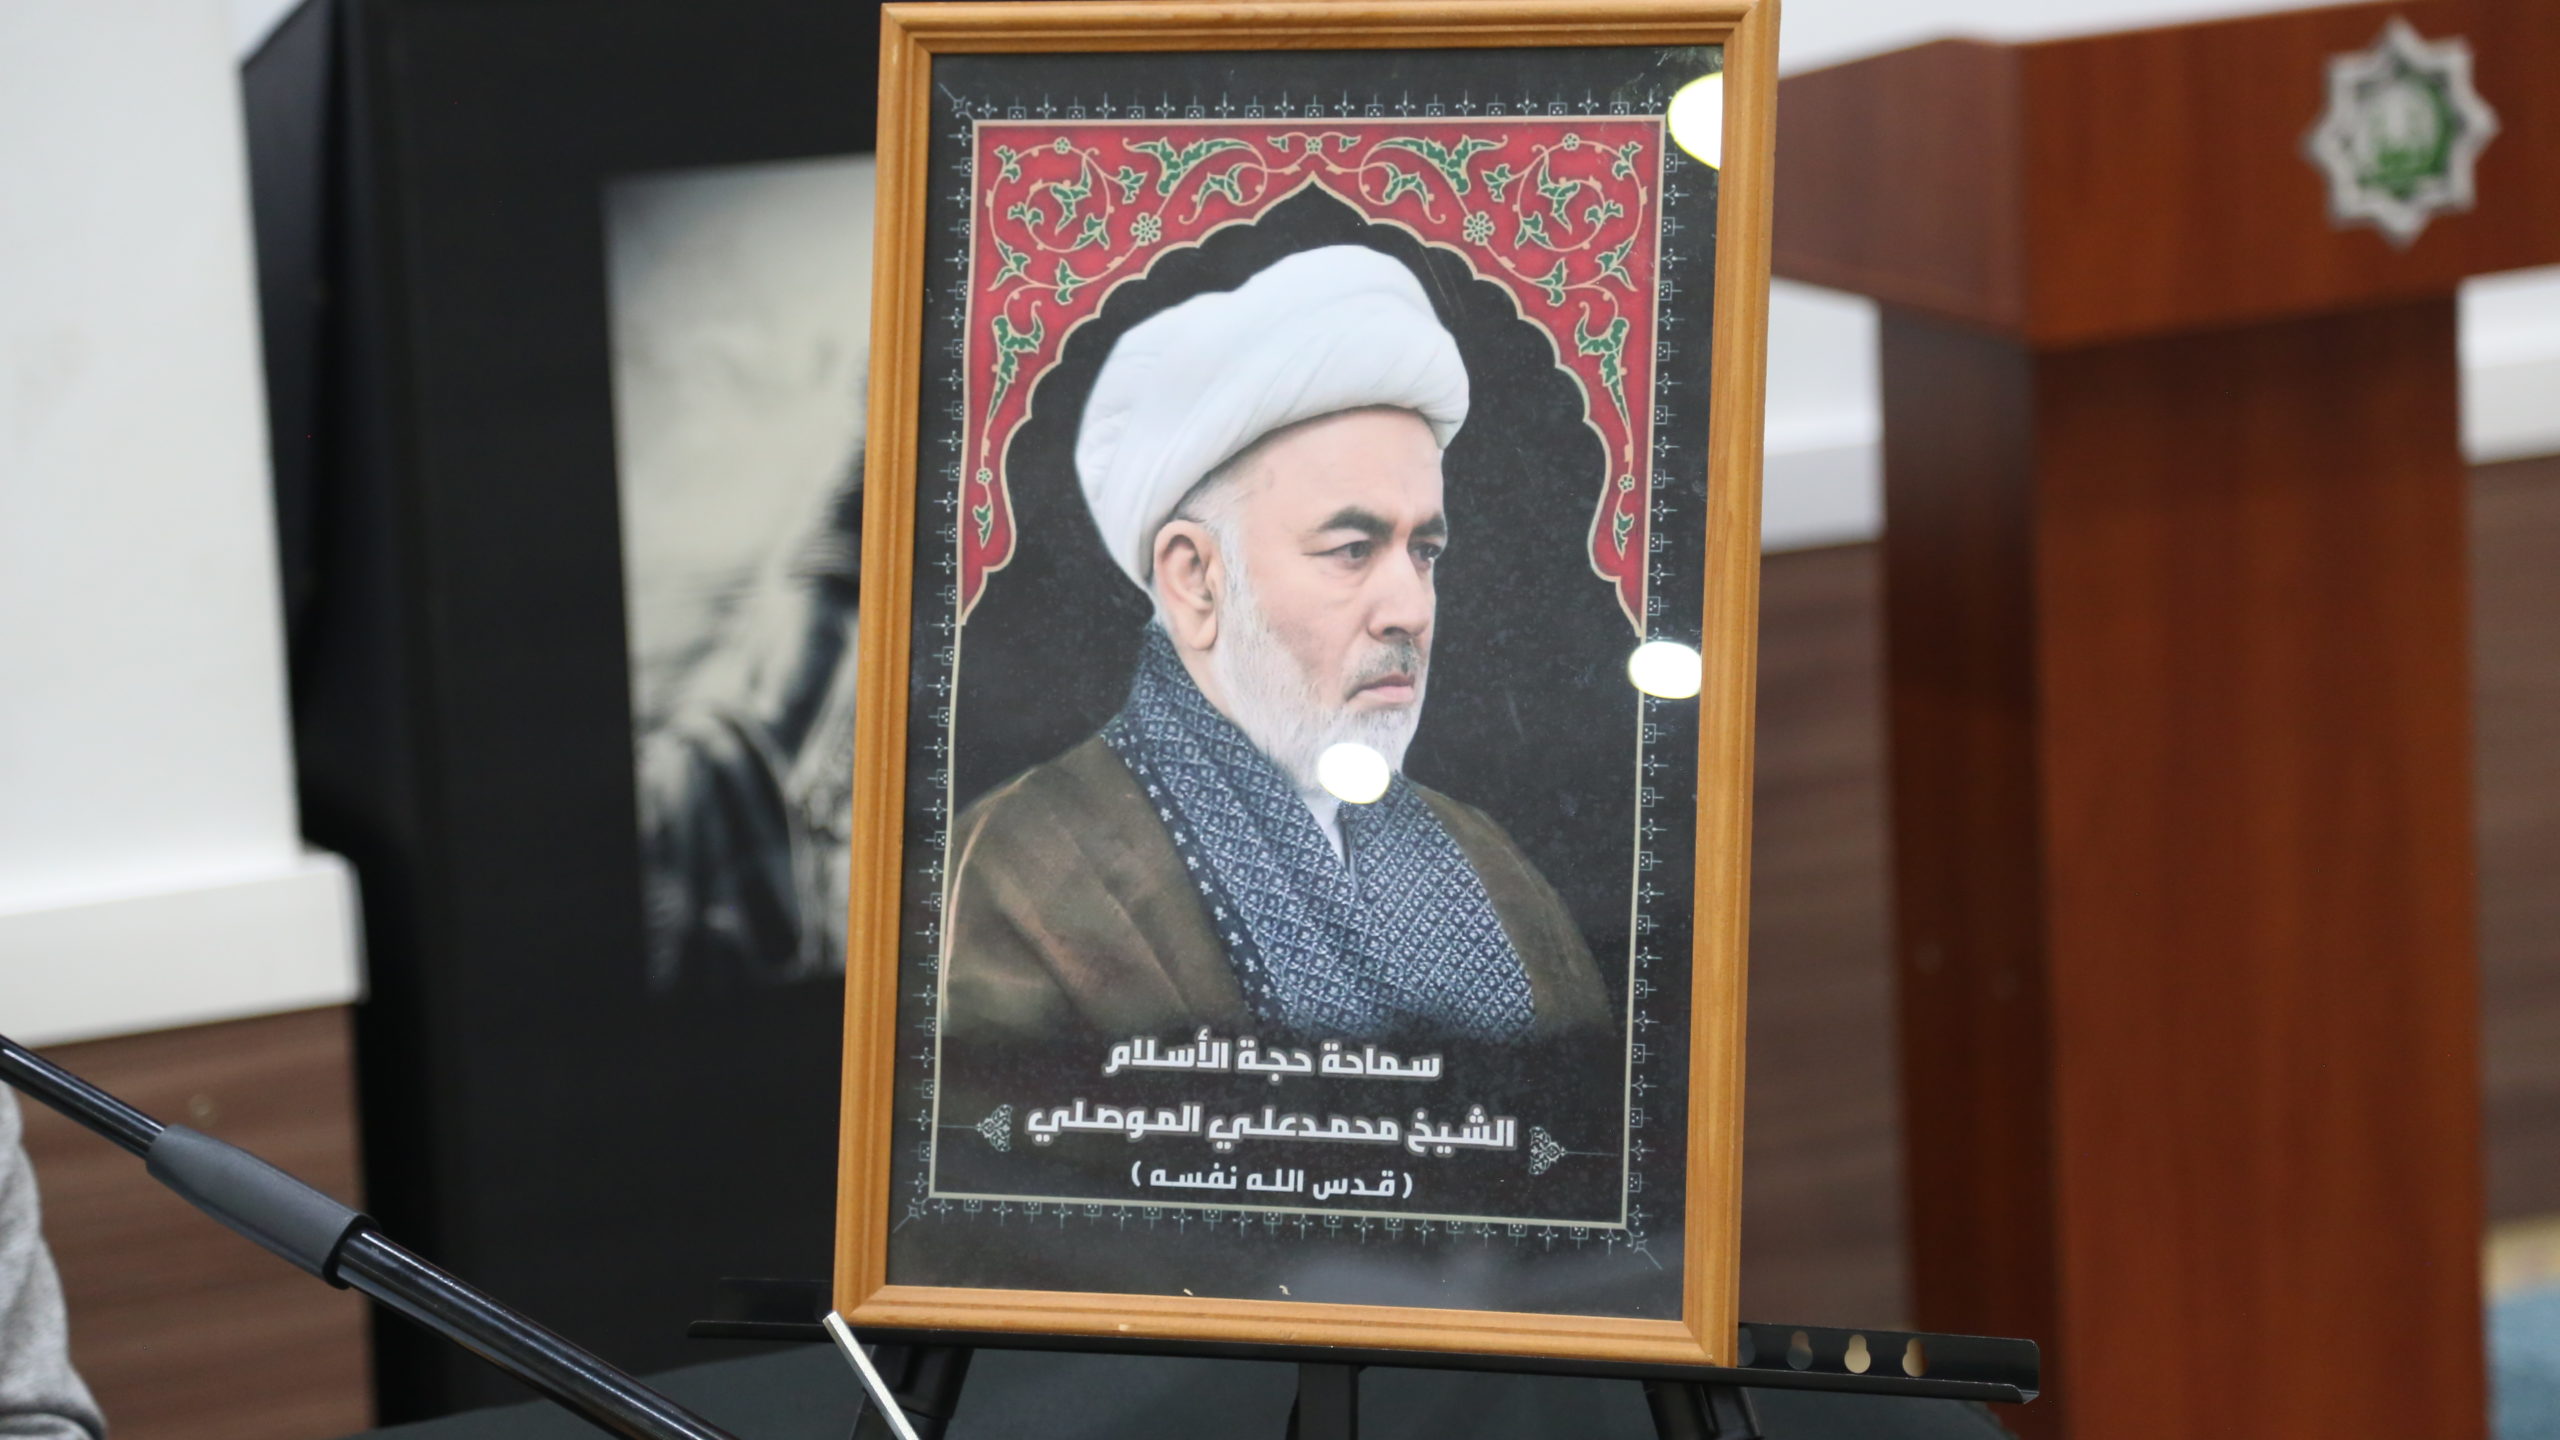 Церемония поминовения годовщины смерти Ходжатуль-Ислам валь-Муслимин Шейха Мухаммада Али Мосули в МИЦ